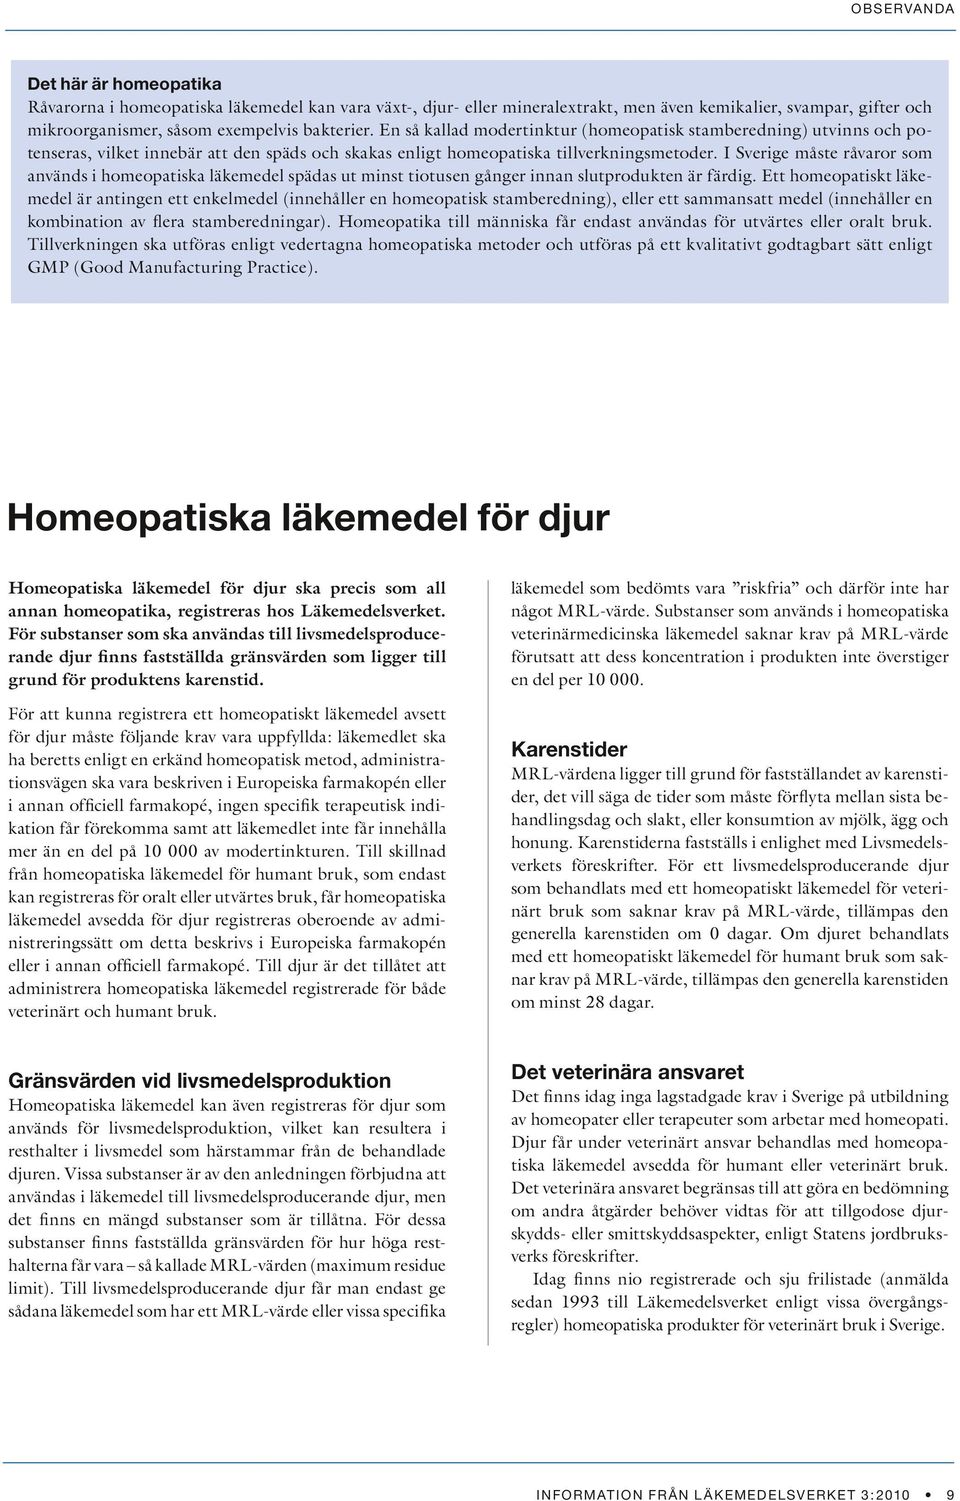 I Sverige måste råvaror som används i homeopatiska läkemedel spädas ut minst tiotusen gånger innan slutprodukten är färdig.